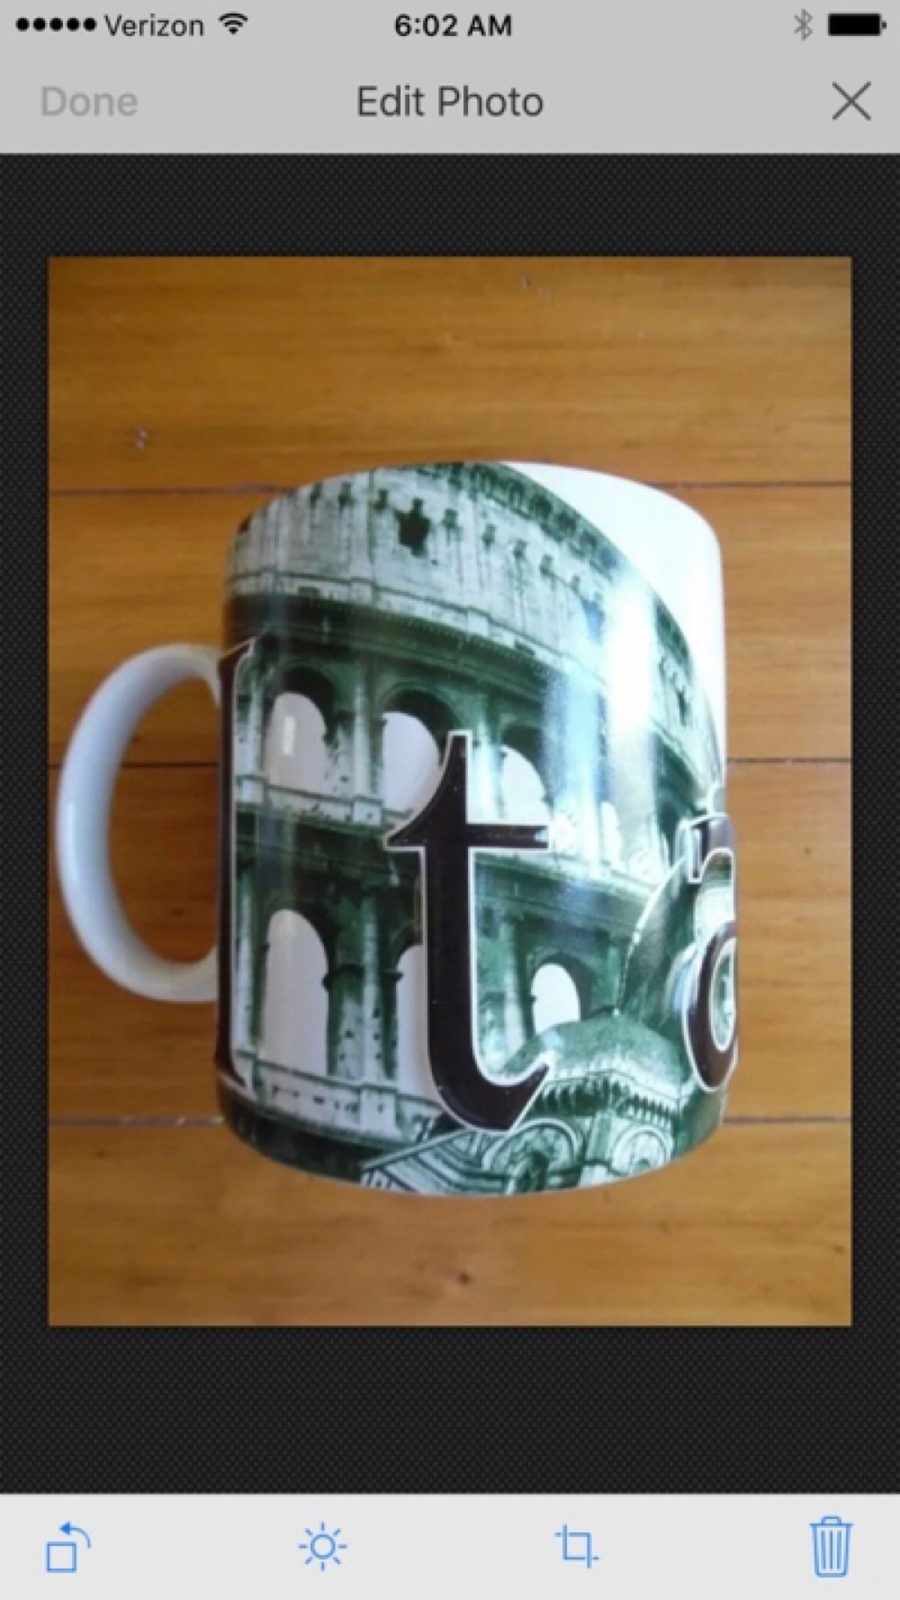 Starbucks Italia Raised Letter Oversized Mug - $32.00